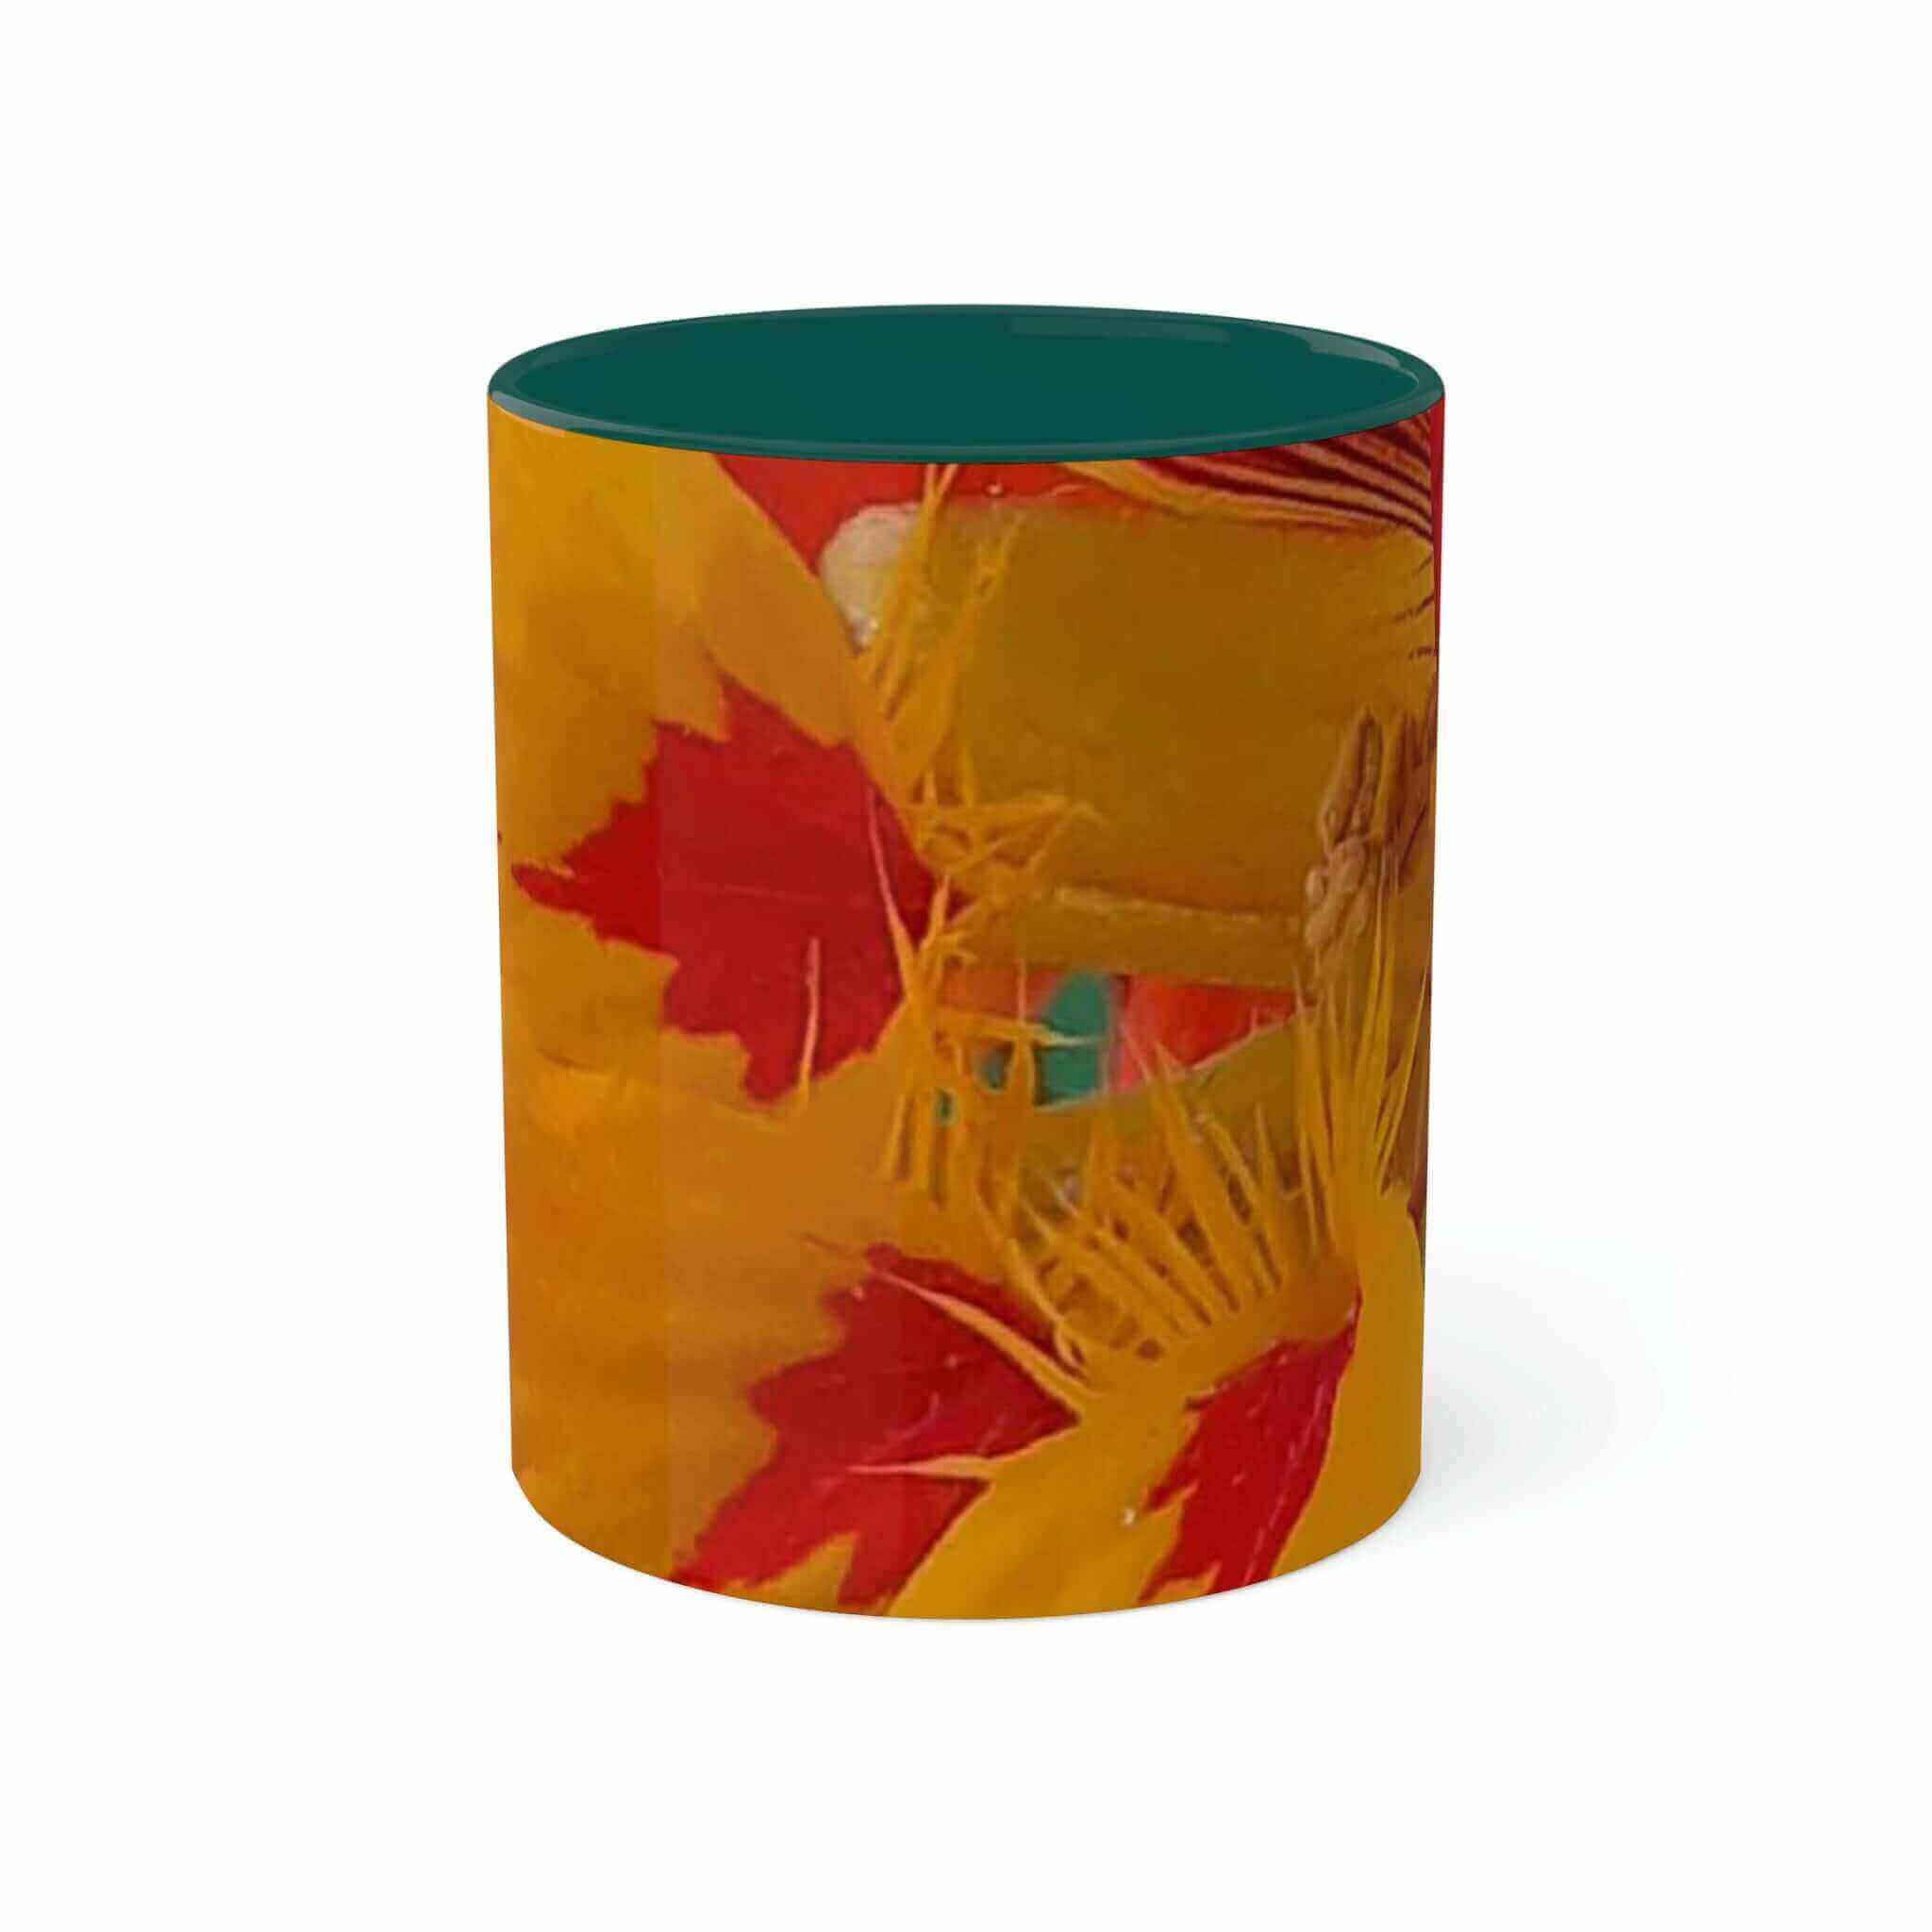 Nasturtium Mixed Colors Garden Collection Ceramic Mug - 2